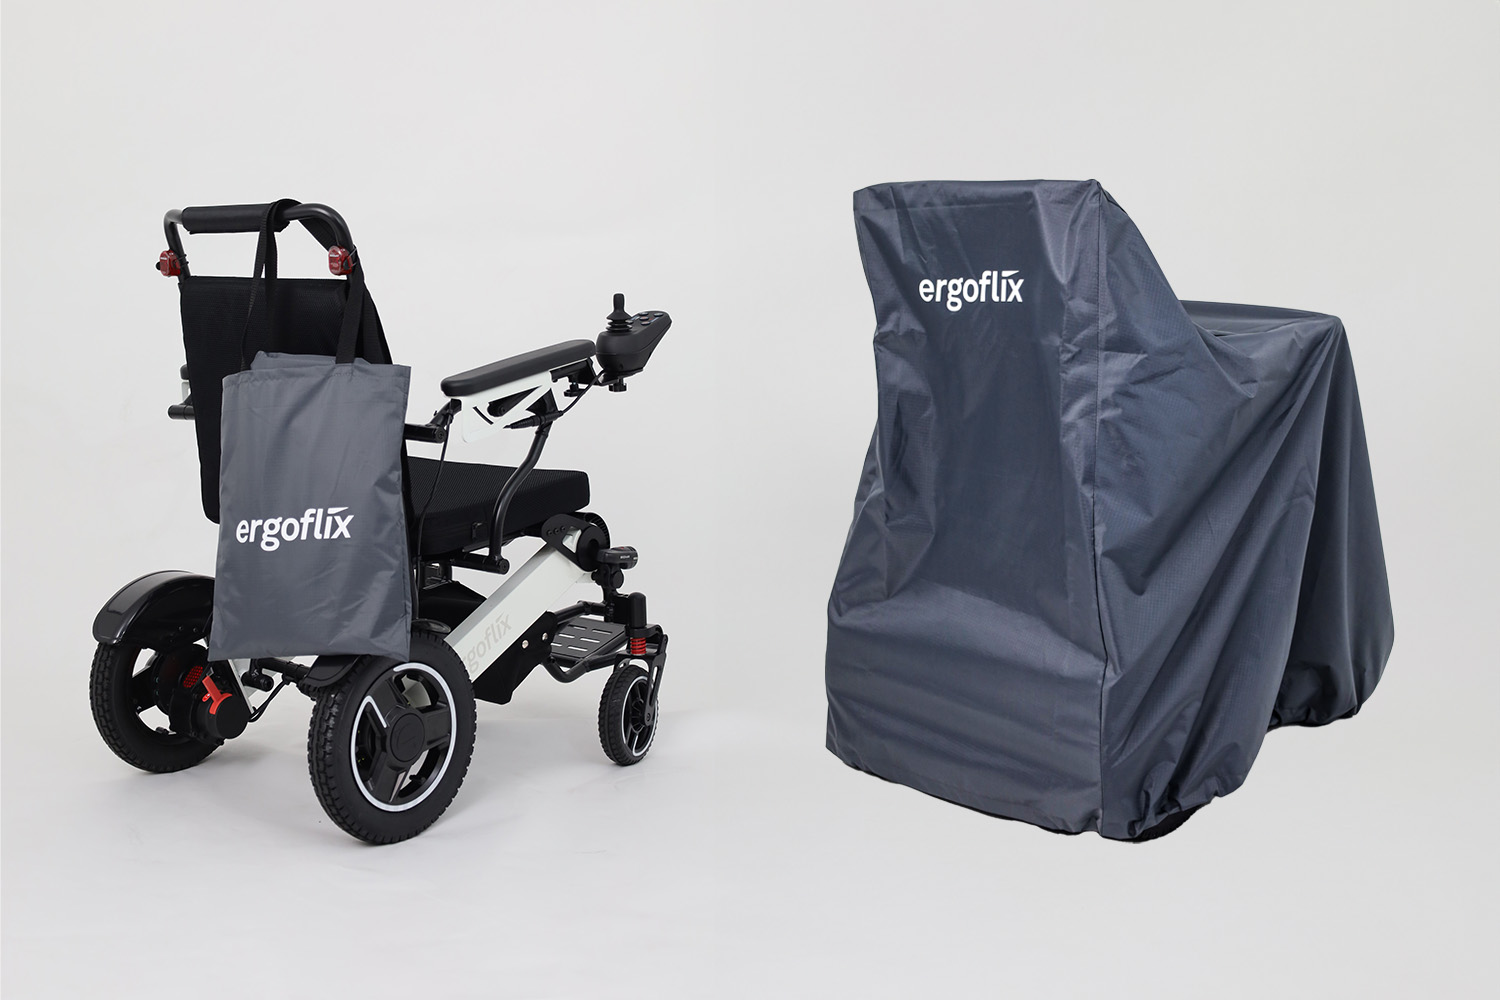 Dieses Bild zeigt einen Rollstuhl von ergoflix mit einer Rollstuhl Schutzhülle